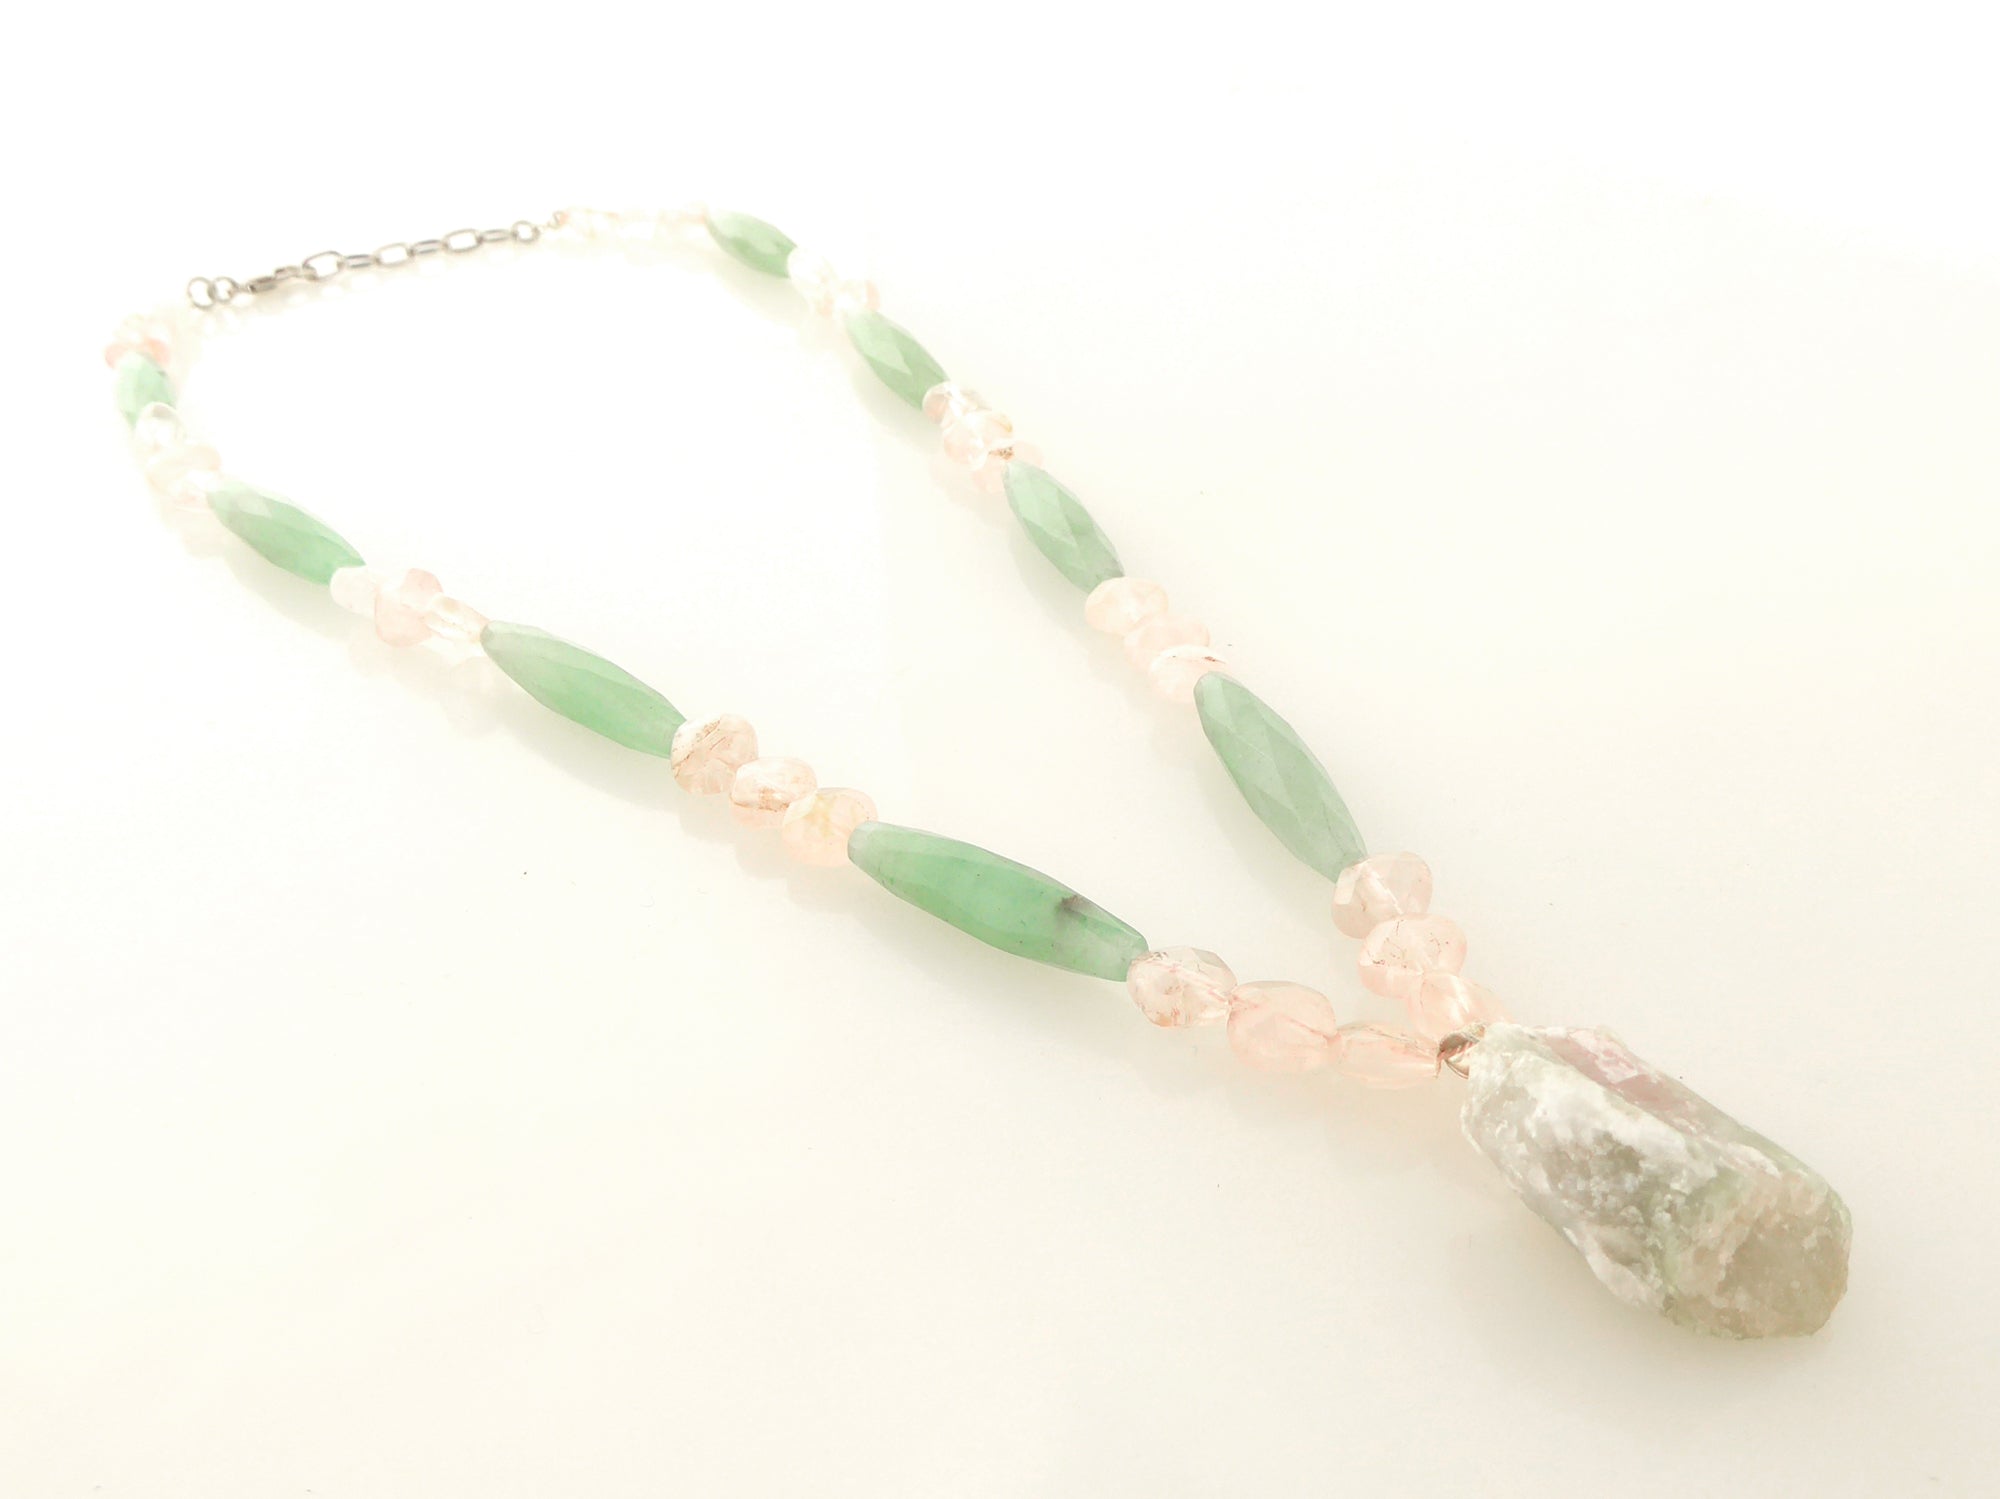 Watermelon tourmaline rose quartz green aventurine necklace by Jenny Dayco 2